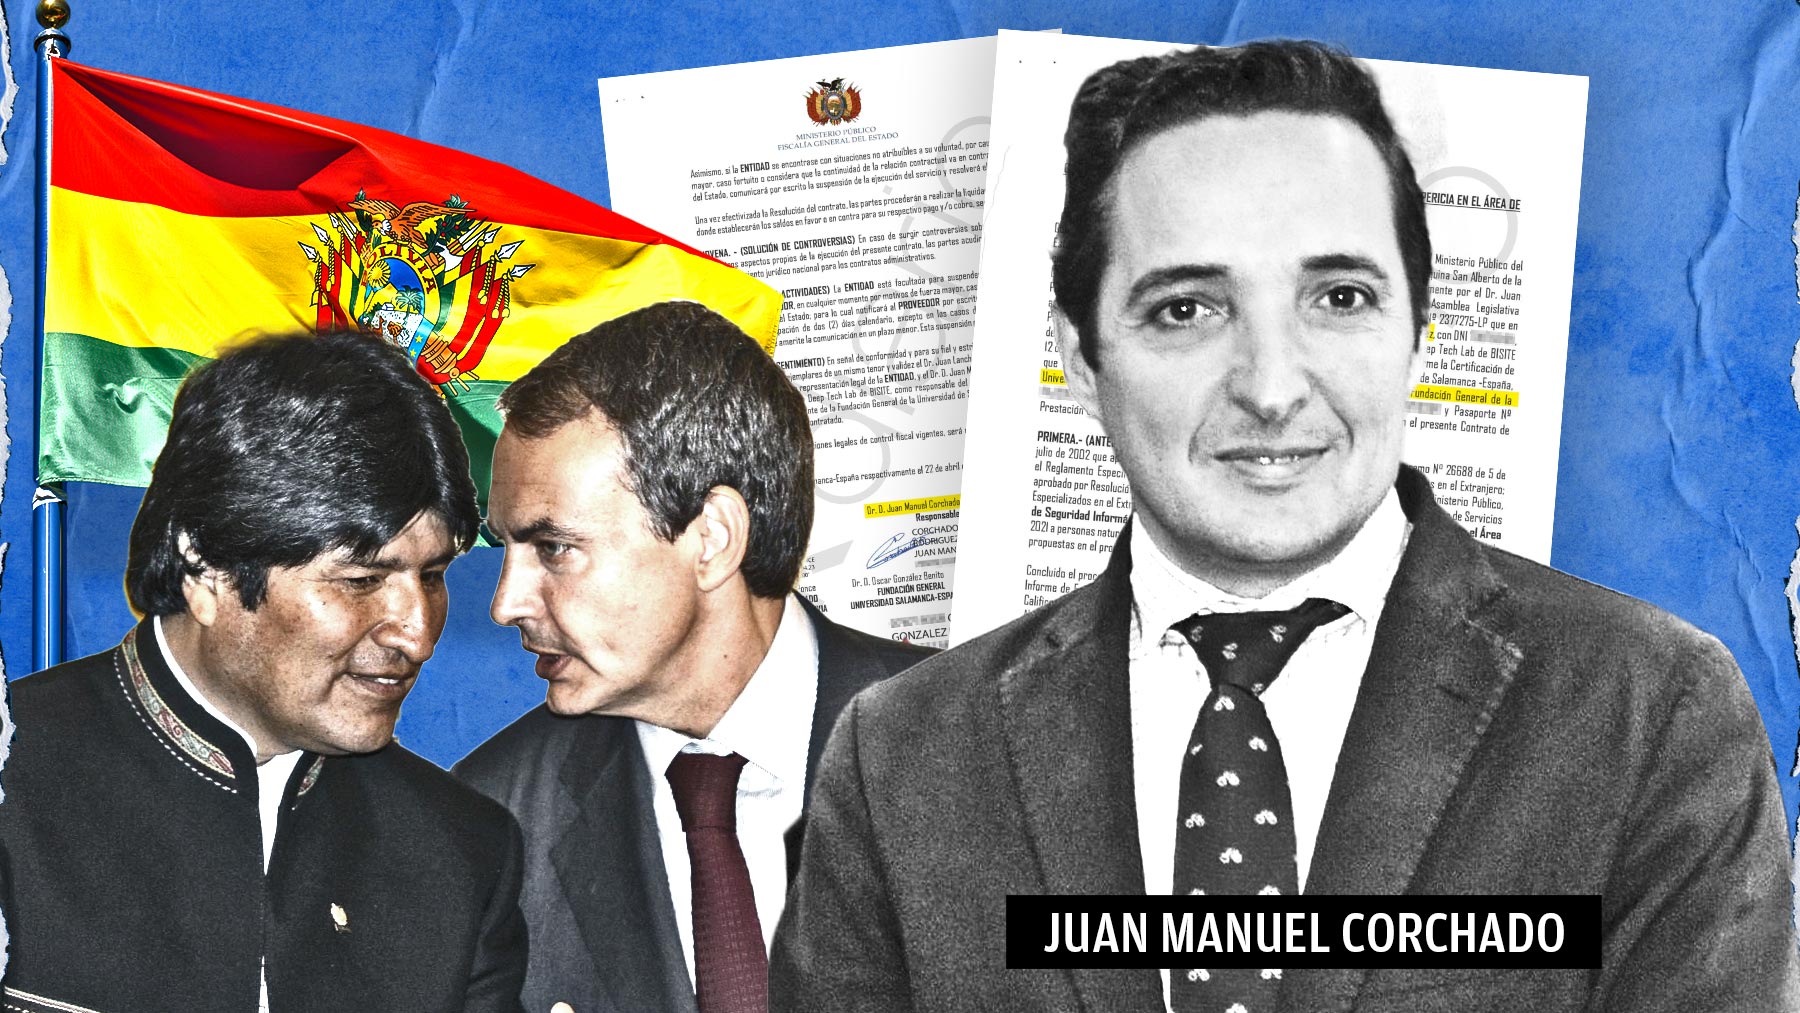 Juan Manuel Corchado, profesor de la Universidad de Salamanca, junto con José Luis Rodríguez Zapatero y Evo Morales.